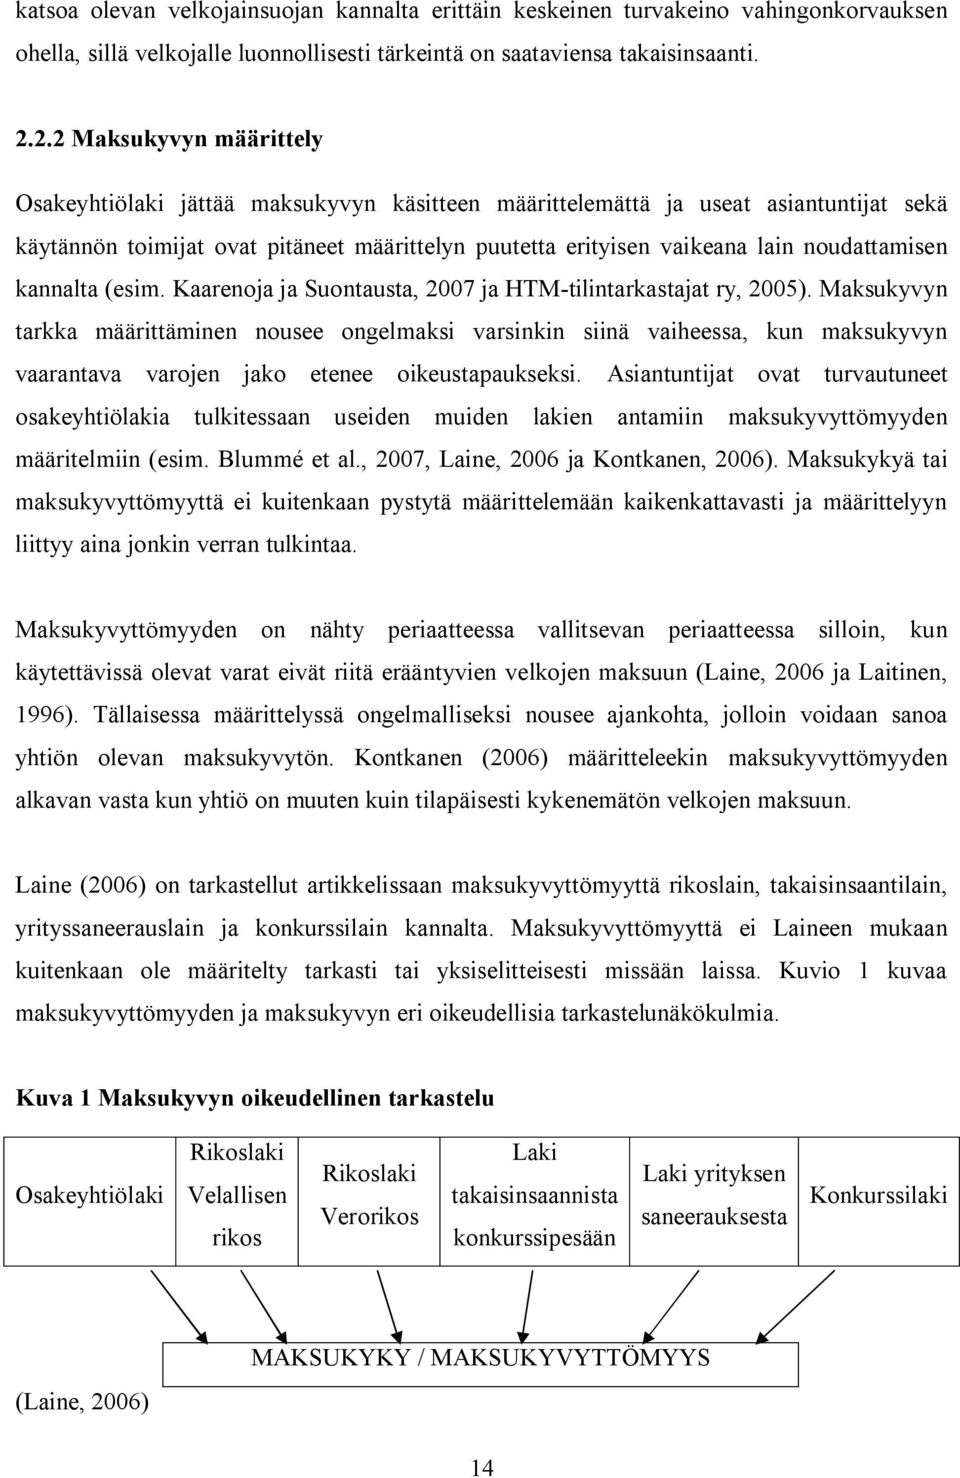 noudattamisen kannalta (esim. Kaarenoja ja Suontausta, 2007 ja HTM-tilintarkastajat ry, 2005).